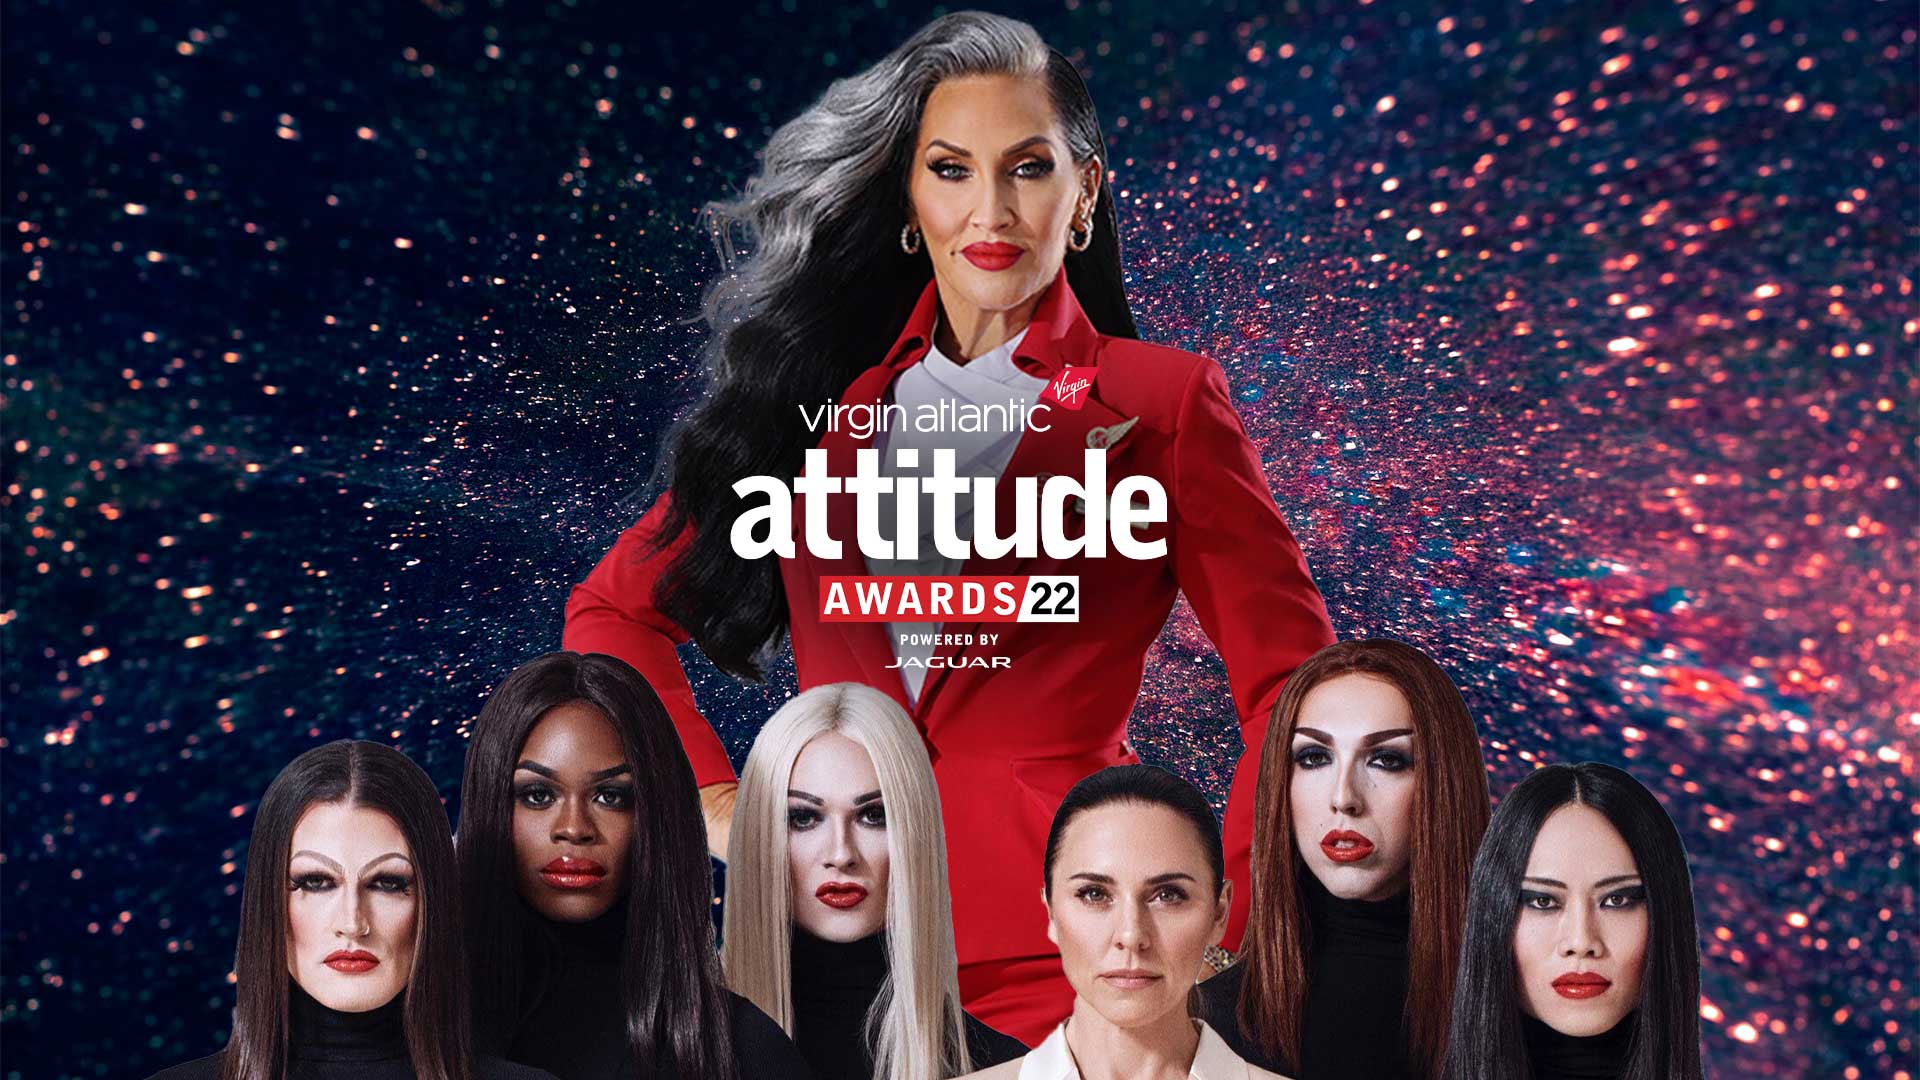 Attitude Awards 2022 Michelle Visage confirmed as host Attitude